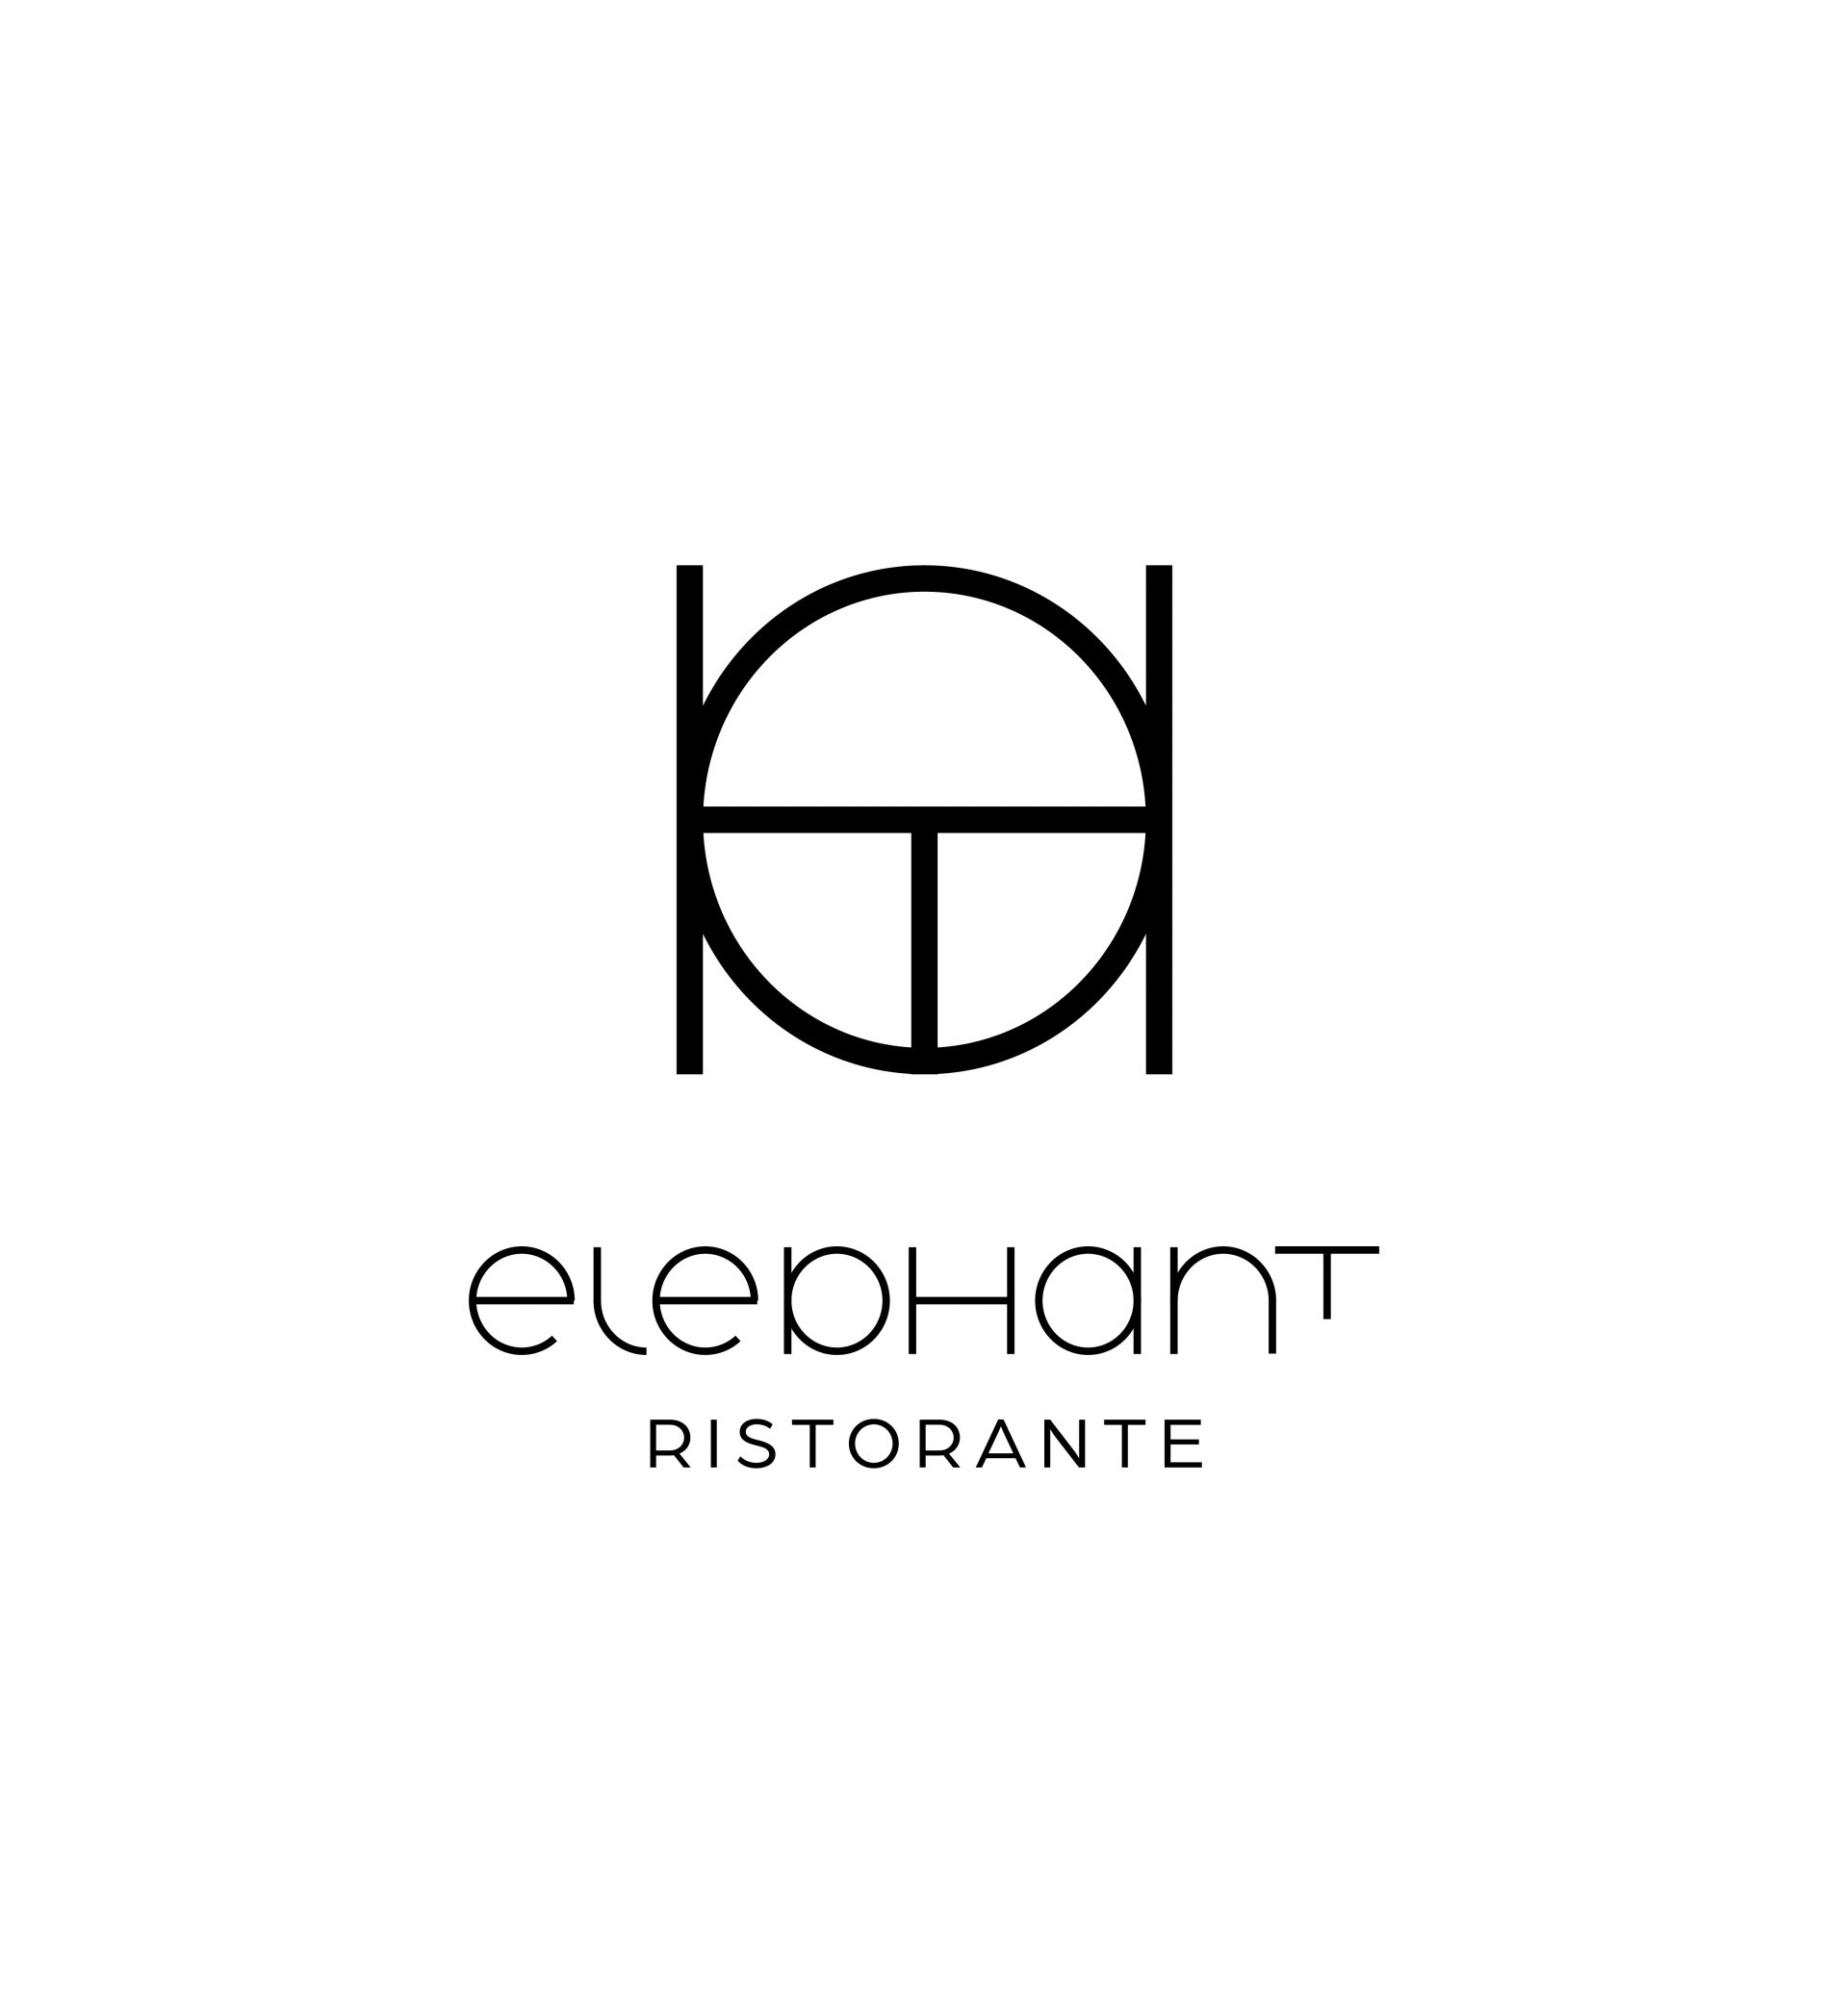 Il progetto di branding per Elephant ristorante